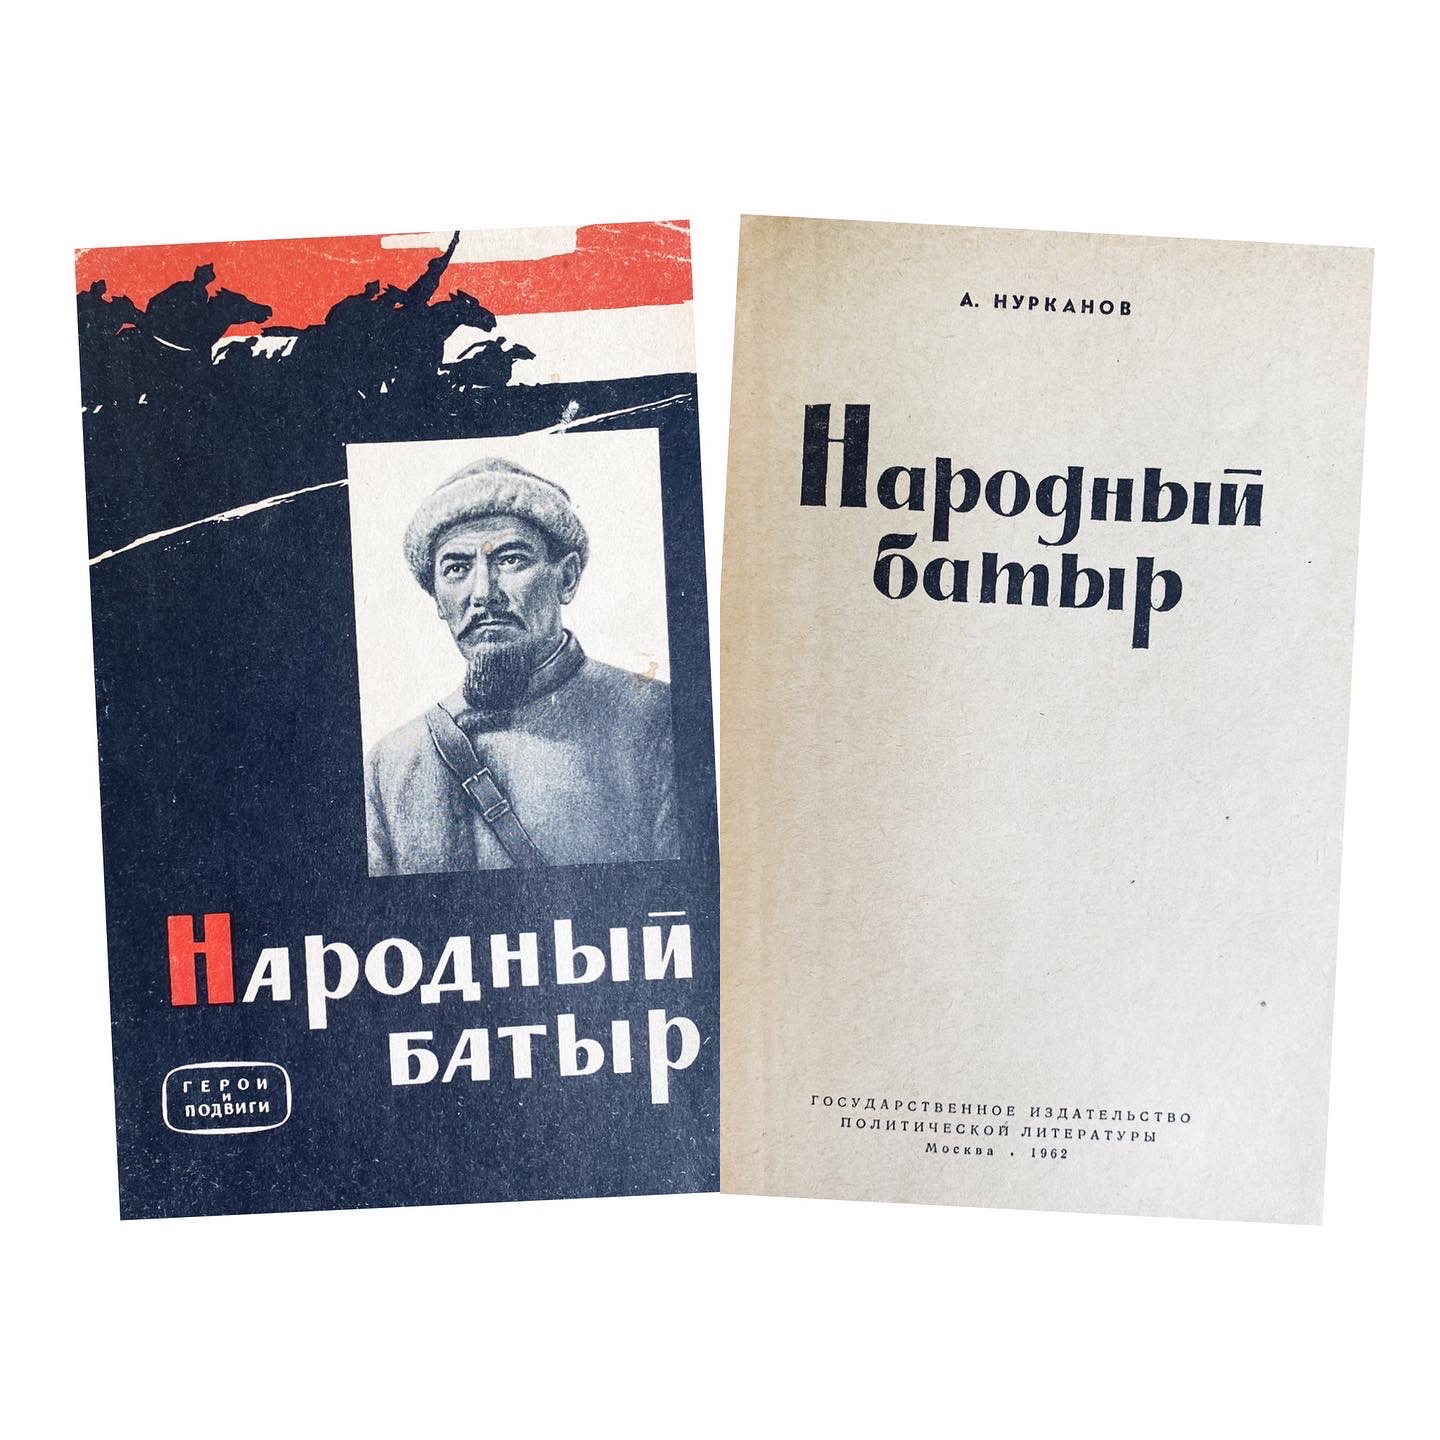 Купить книгу А. Нурканова (Народный батыр)